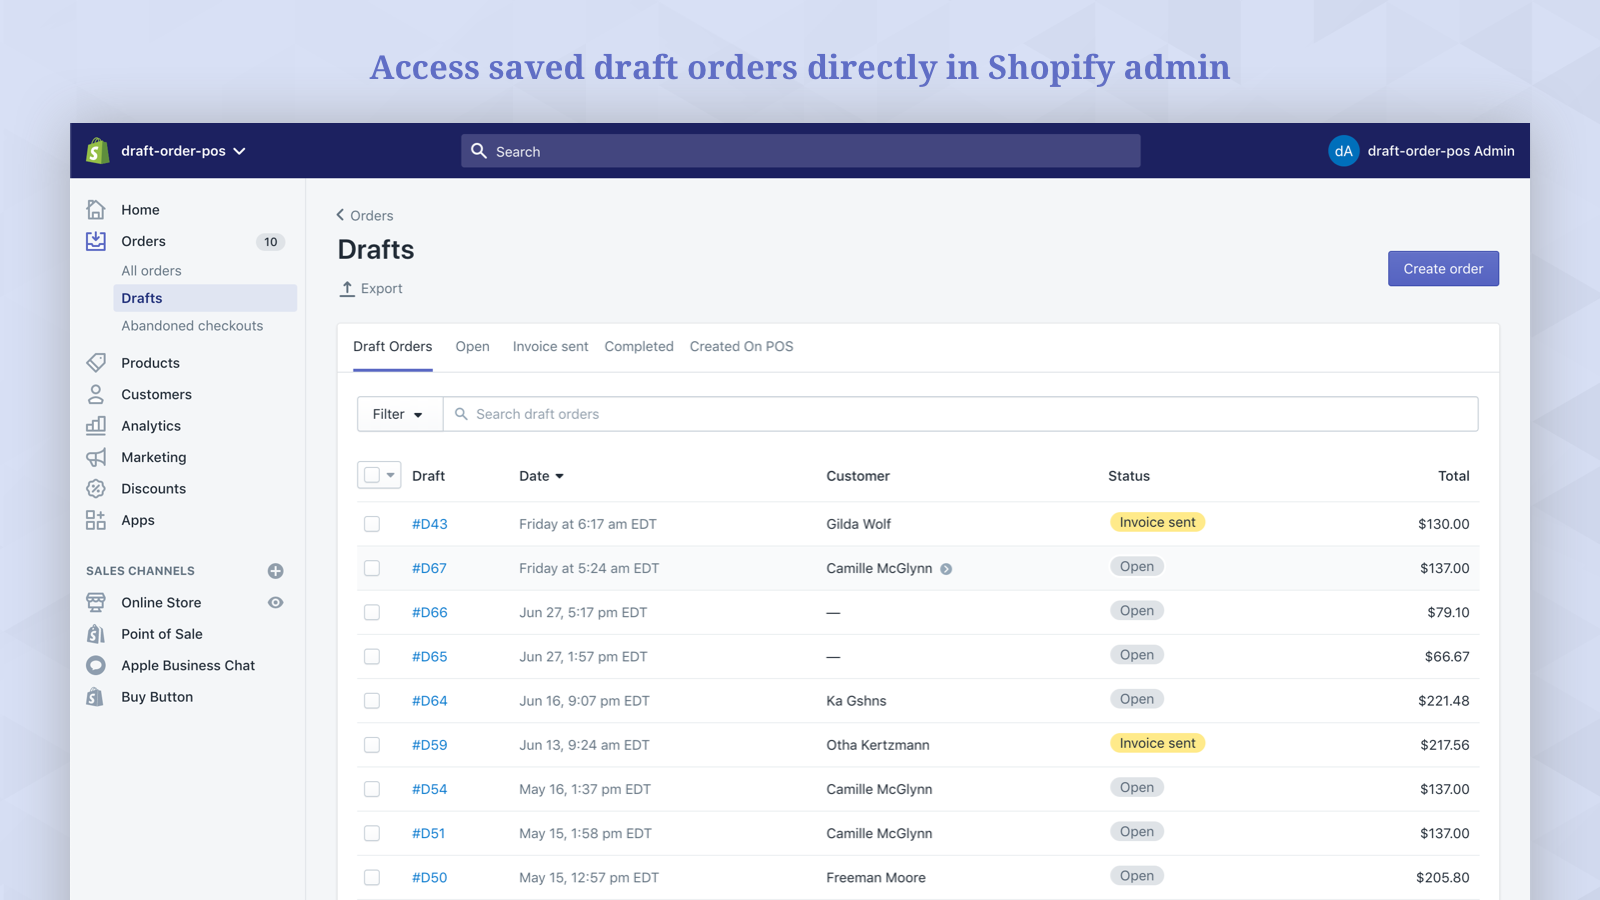 Accede a los pedidos en borrador guardados directamente en el administrador de Shopify